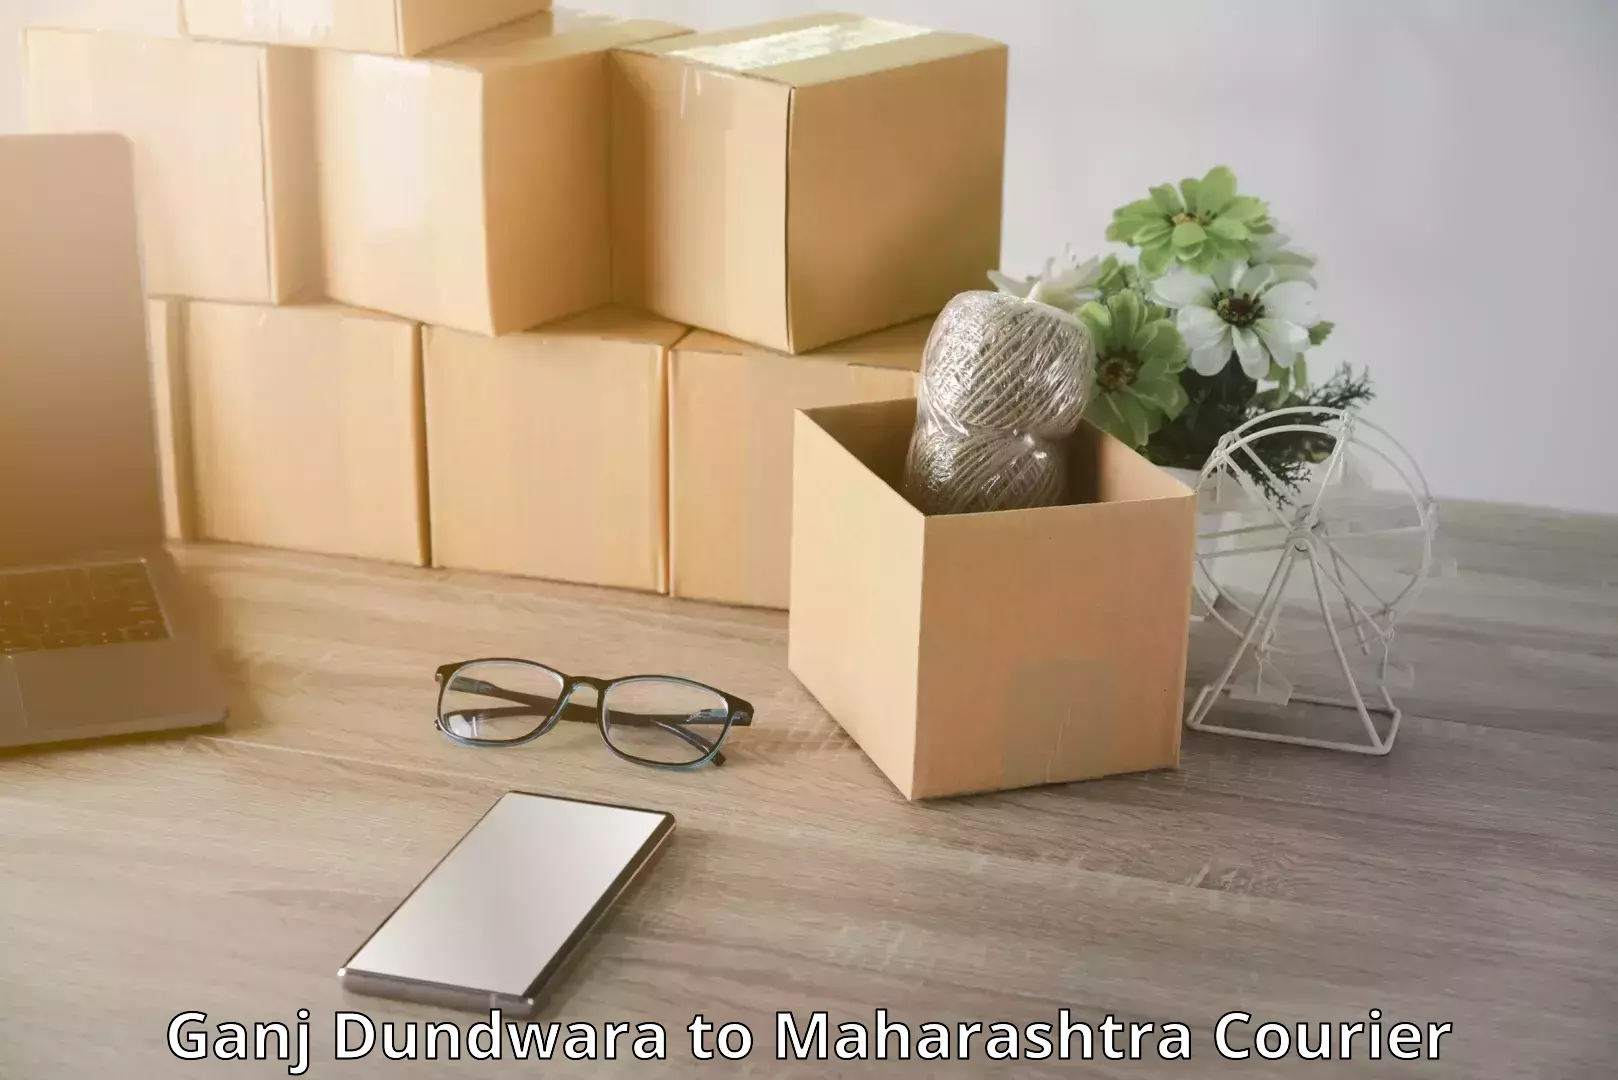 Luggage delivery network Ganj Dundwara to Maharashtra